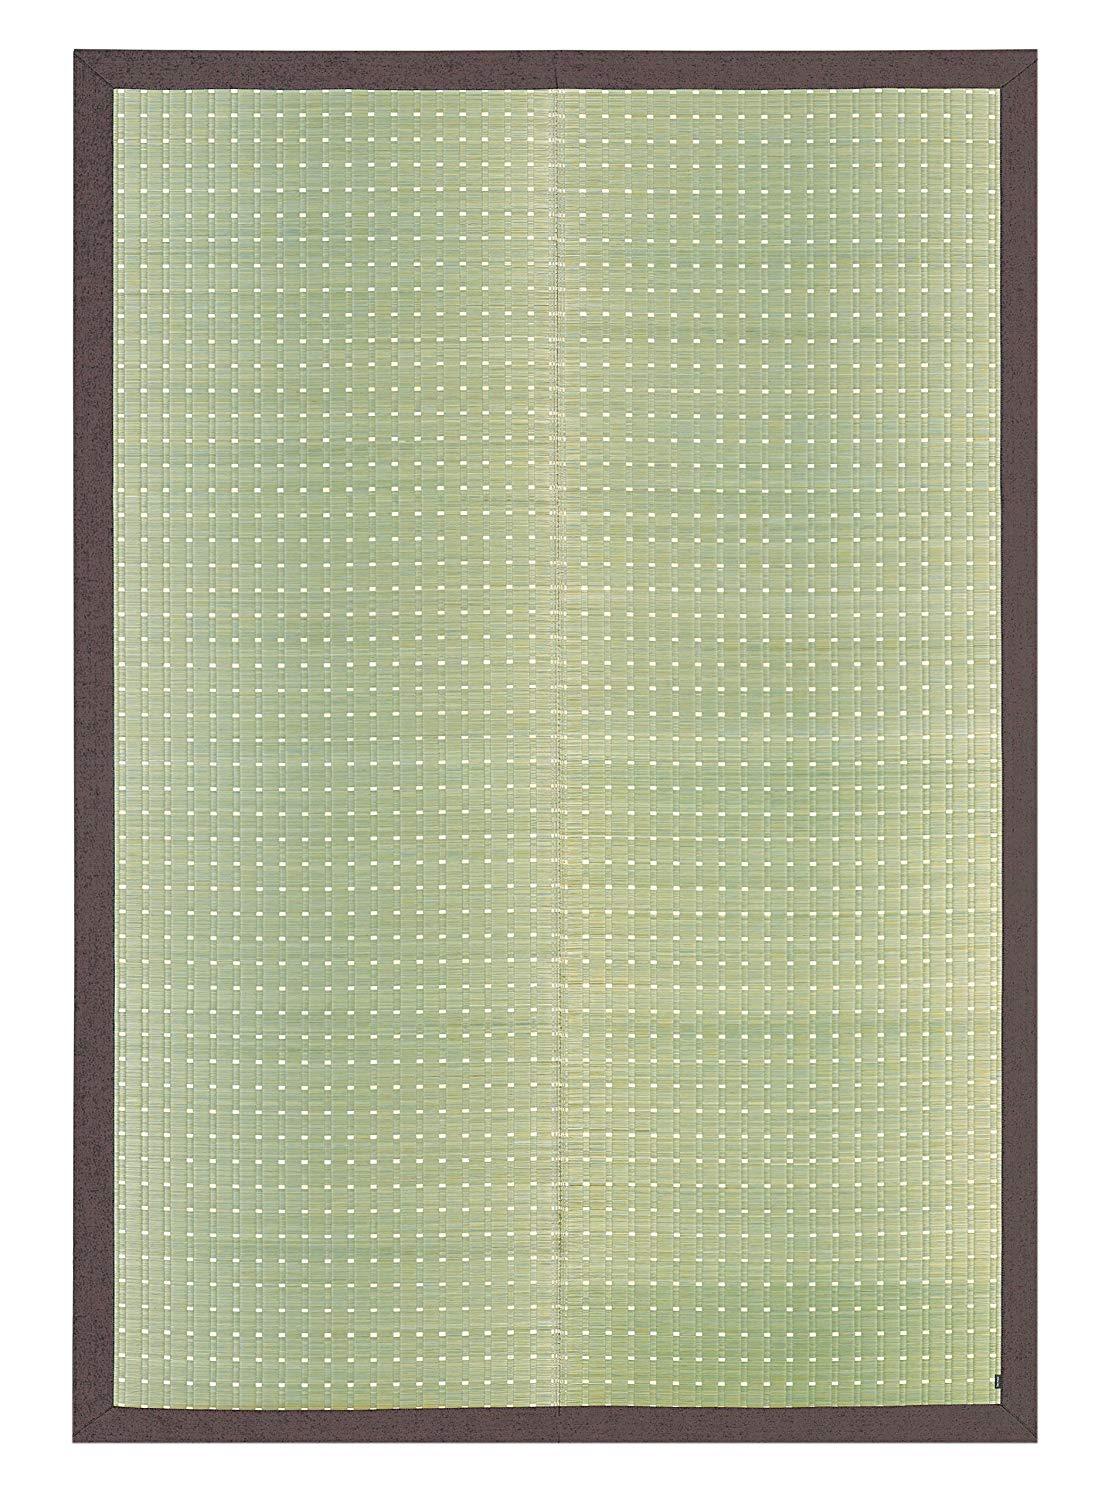 アウトレット 国産い草センターラグ 吉兆(きっちょう) 約191×250cm